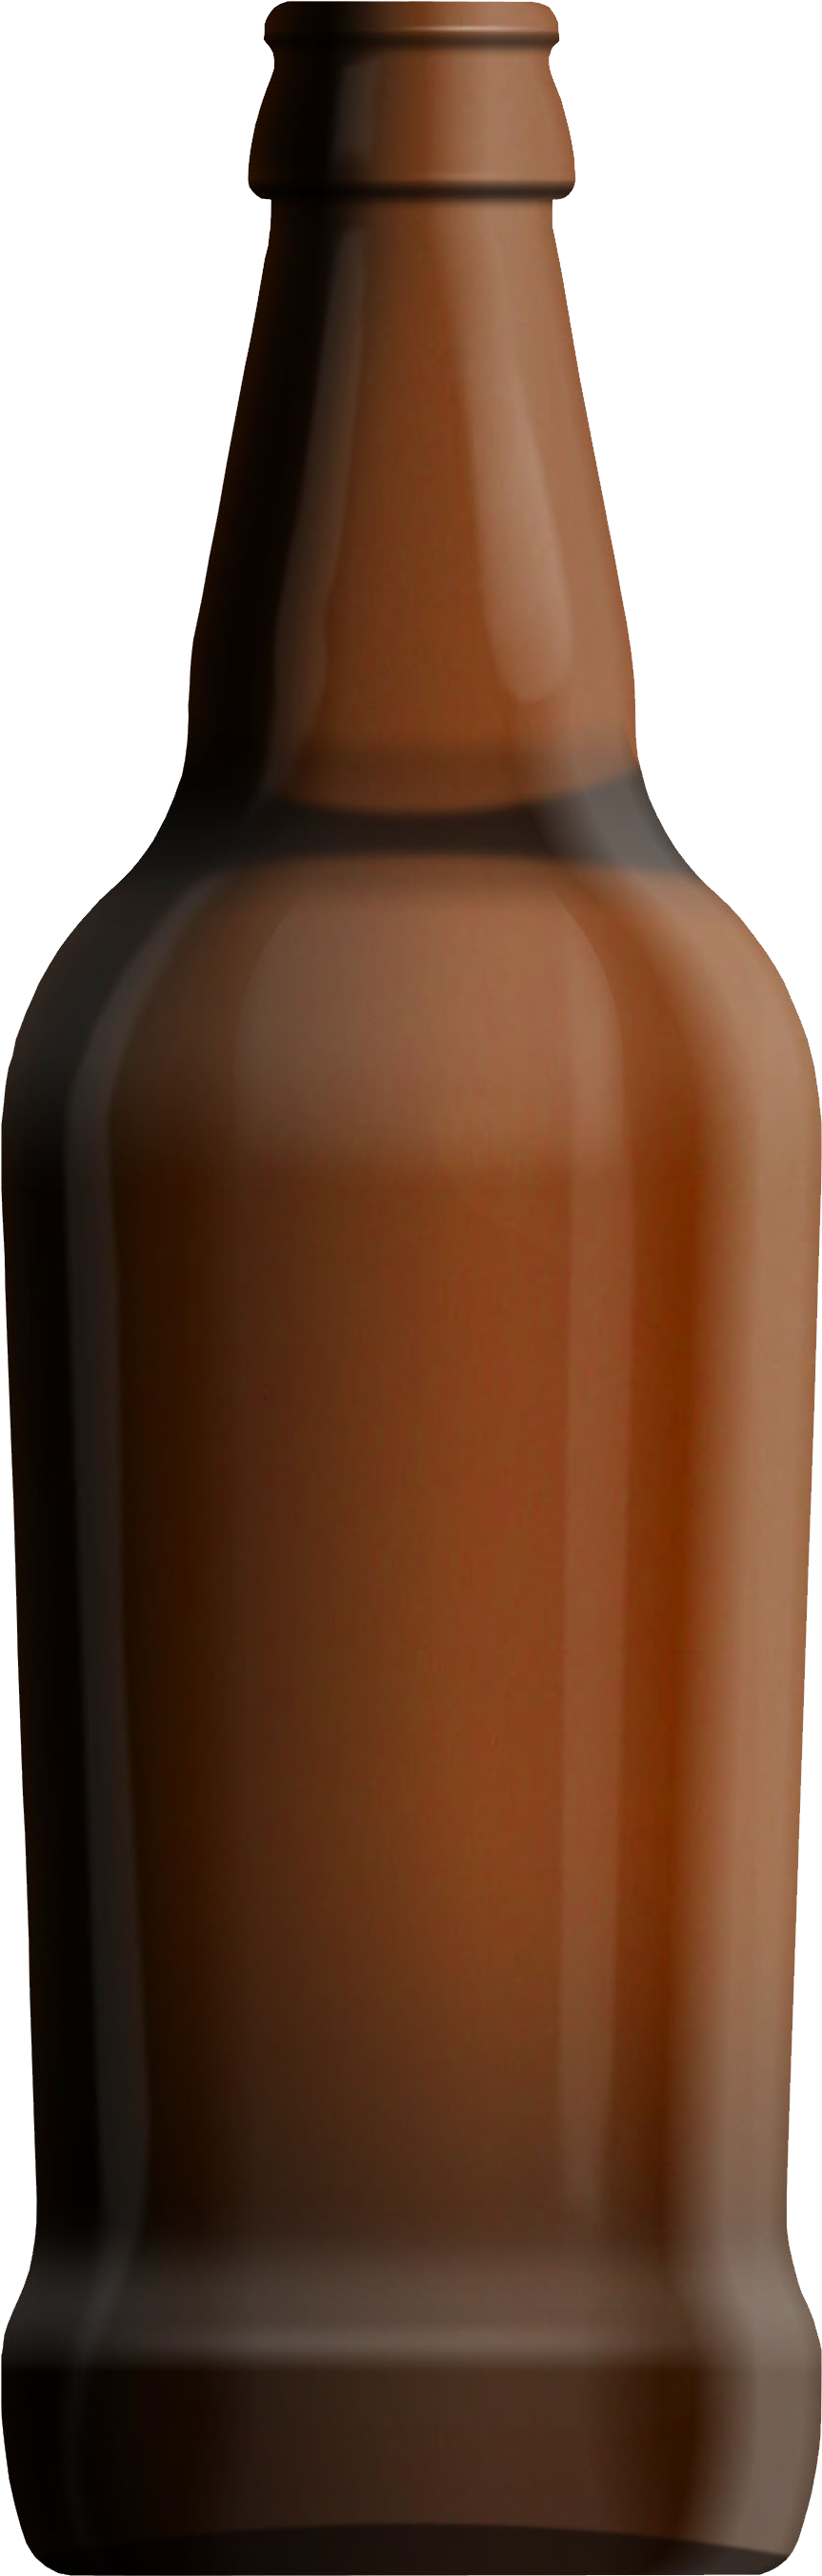 Beer Bottle Transparent Png (1098x2940)